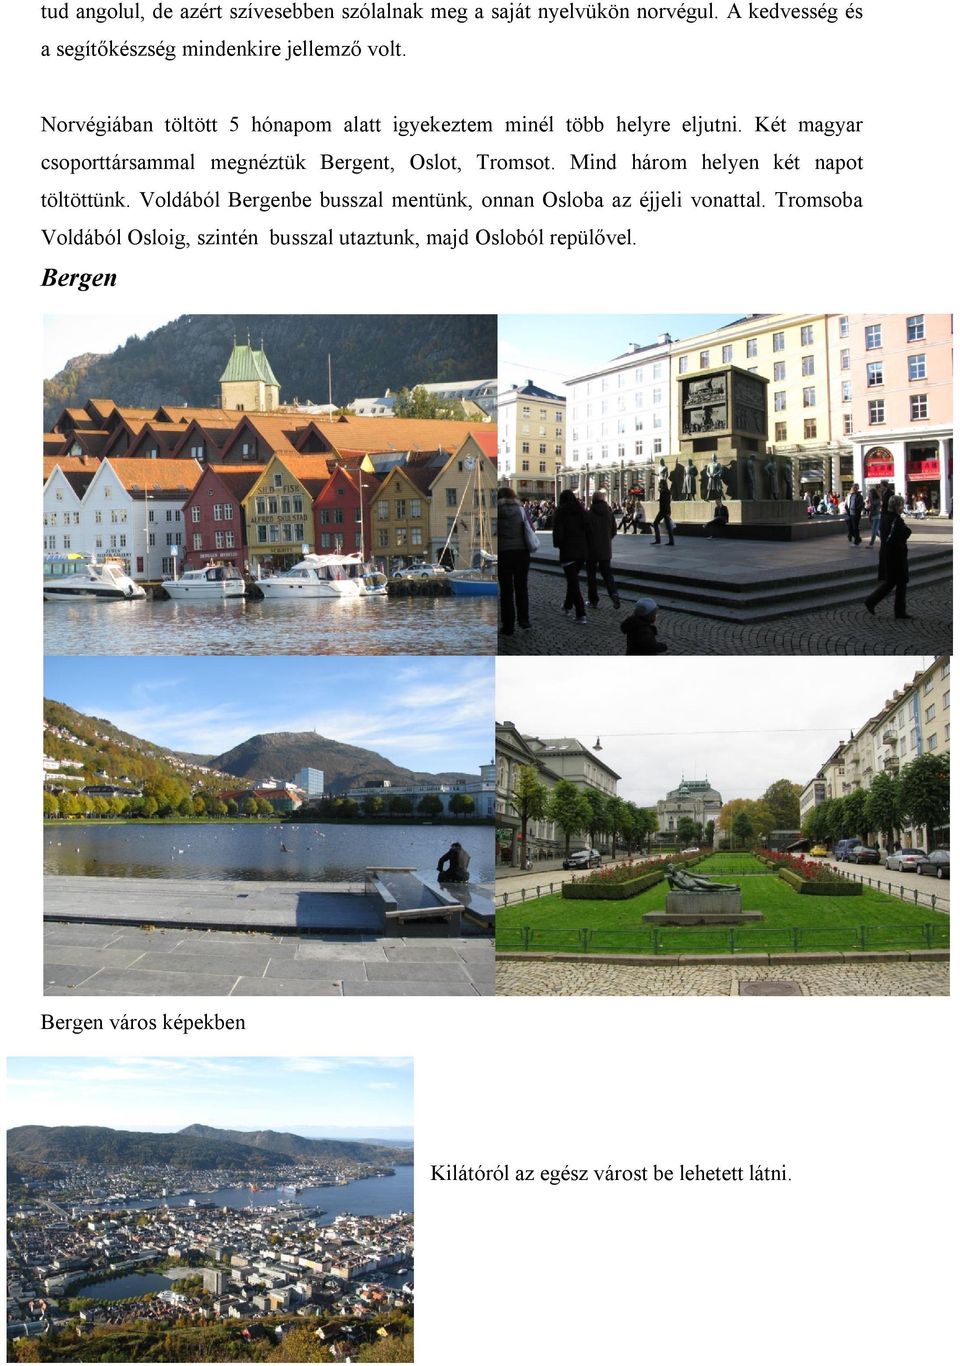 Két magyar csoporttársammal megnéztük Bergent, Oslot, Tromsot. Mind három helyen két napot töltöttünk.